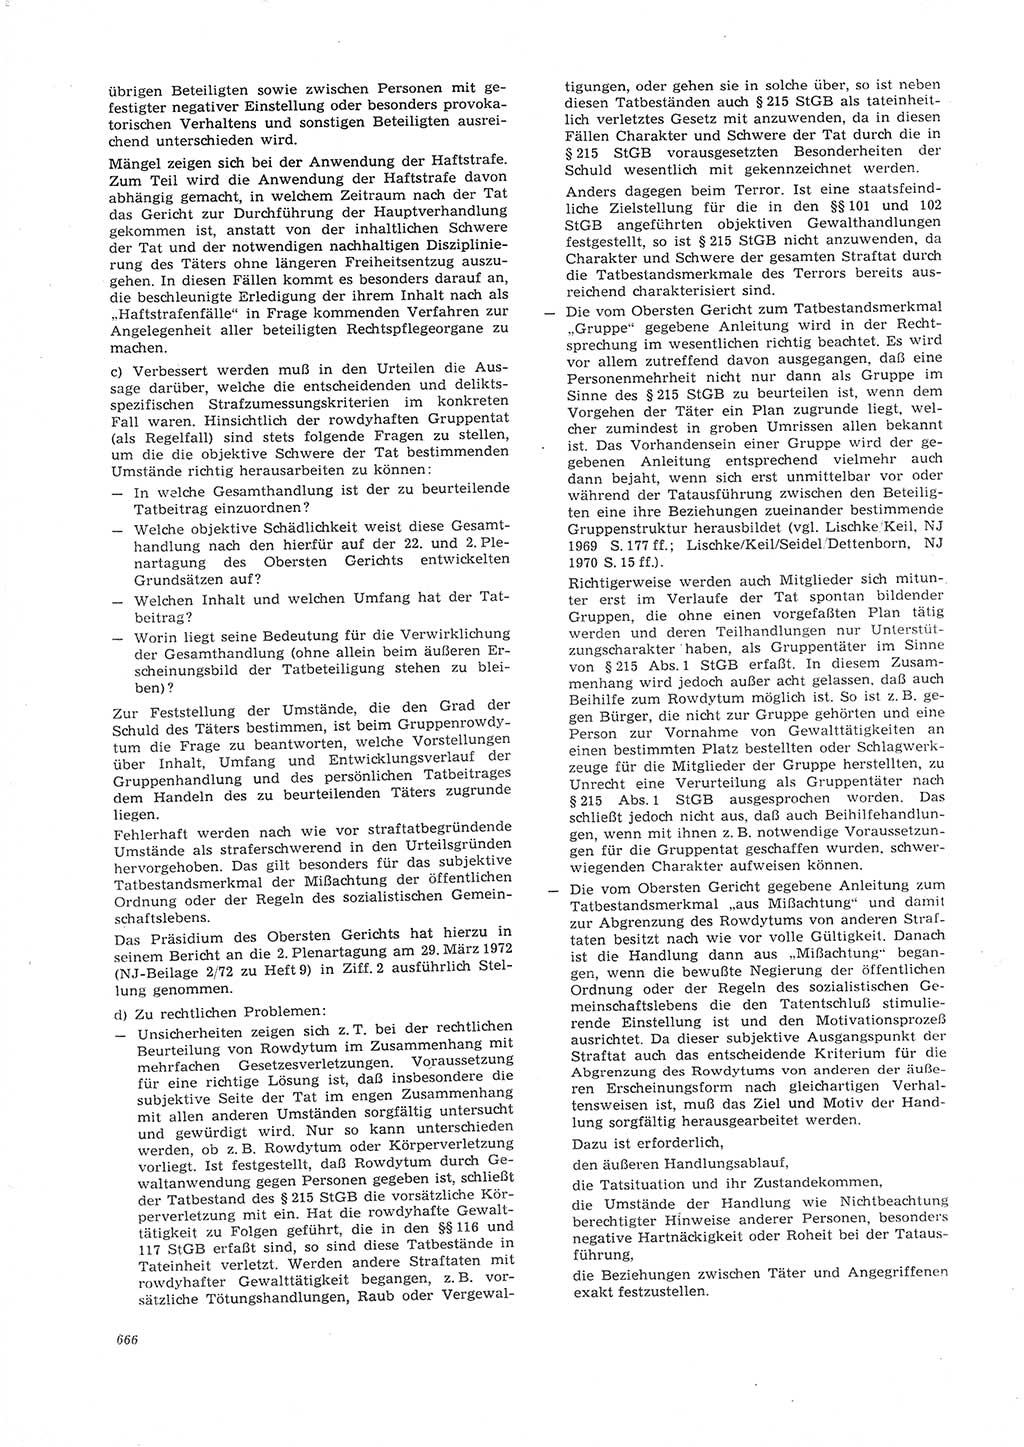 Neue Justiz (NJ), Zeitschrift für Recht und Rechtswissenschaft [Deutsche Demokratische Republik (DDR)], 26. Jahrgang 1972, Seite 666 (NJ DDR 1972, S. 666)